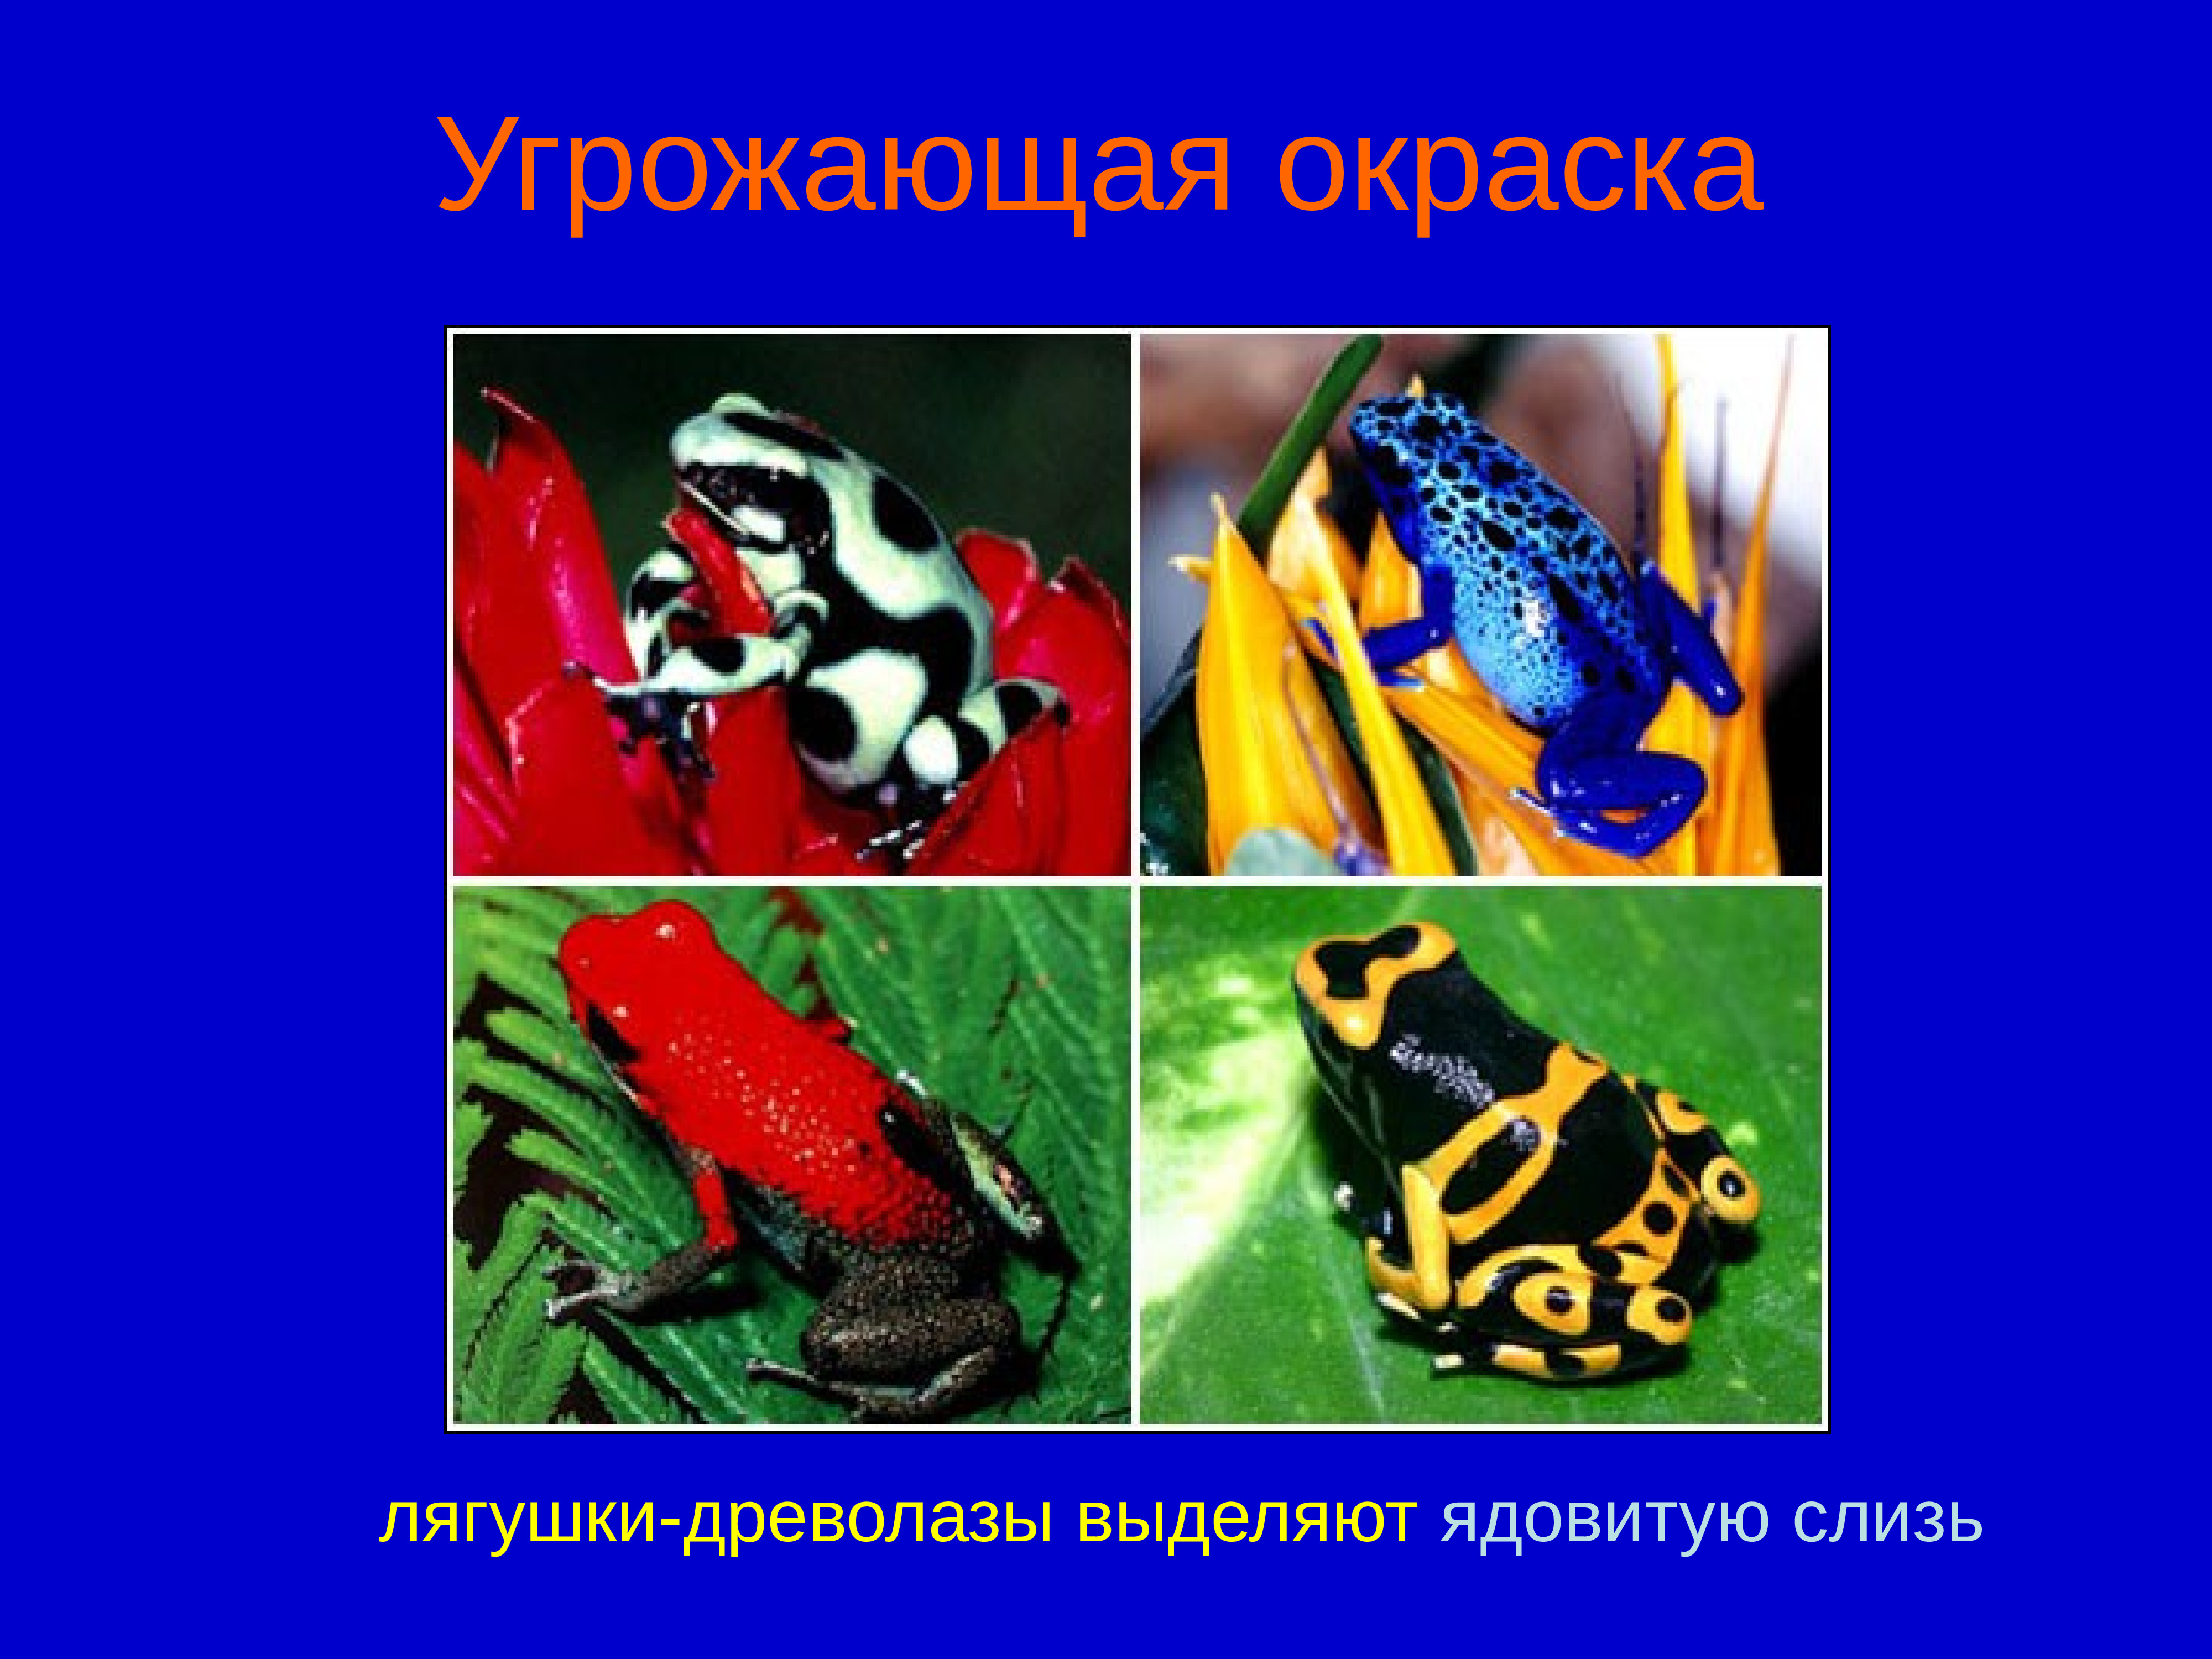 Предупреждающий тип окраски. Предостерегающая окраска лягушка древолаз. Предупреждающая окраска. Угрожающая окраска. Угрожающая окраска животных и растений.